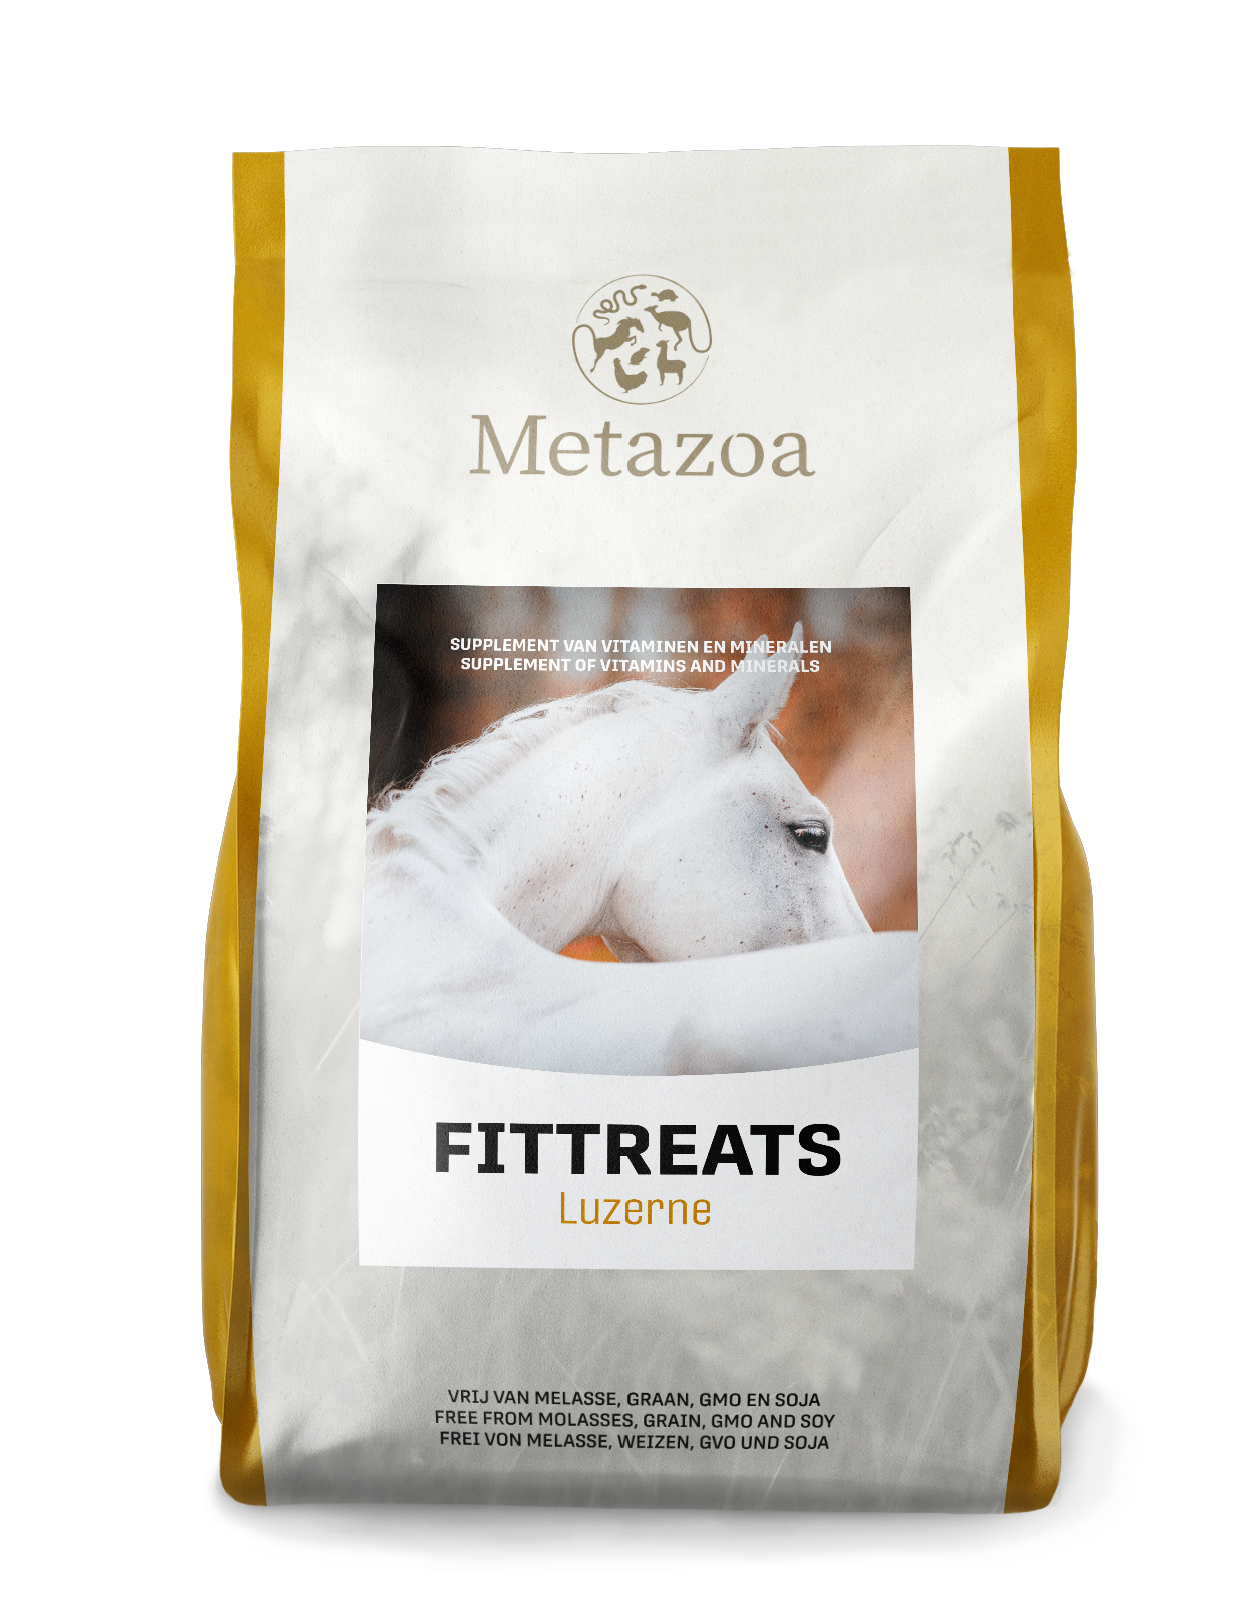 Download Metazoa FitTreats luzerne verpakking 15 kg EAN 4260176355311